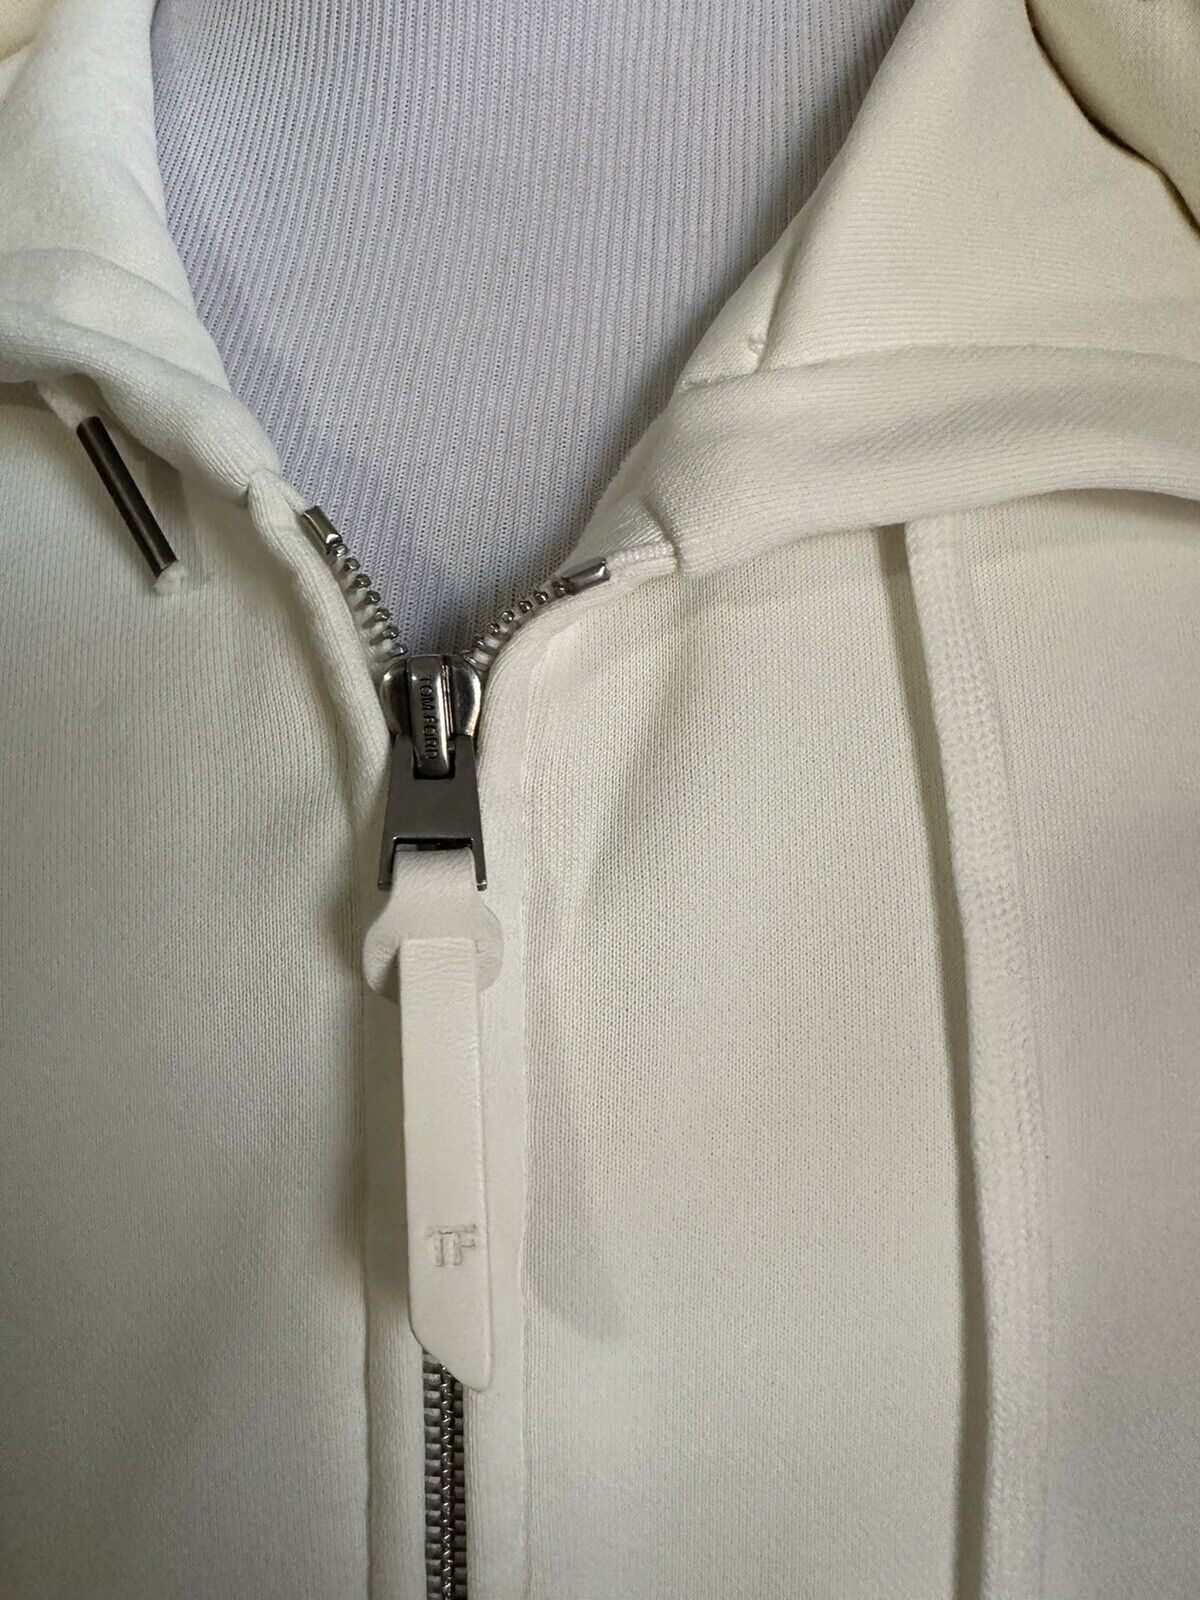 Новая мужская однотонная куртка на молнии с капюшоном TOM FORD за 990 долларов, свитер NATURAL SOLID 46 US/56 E